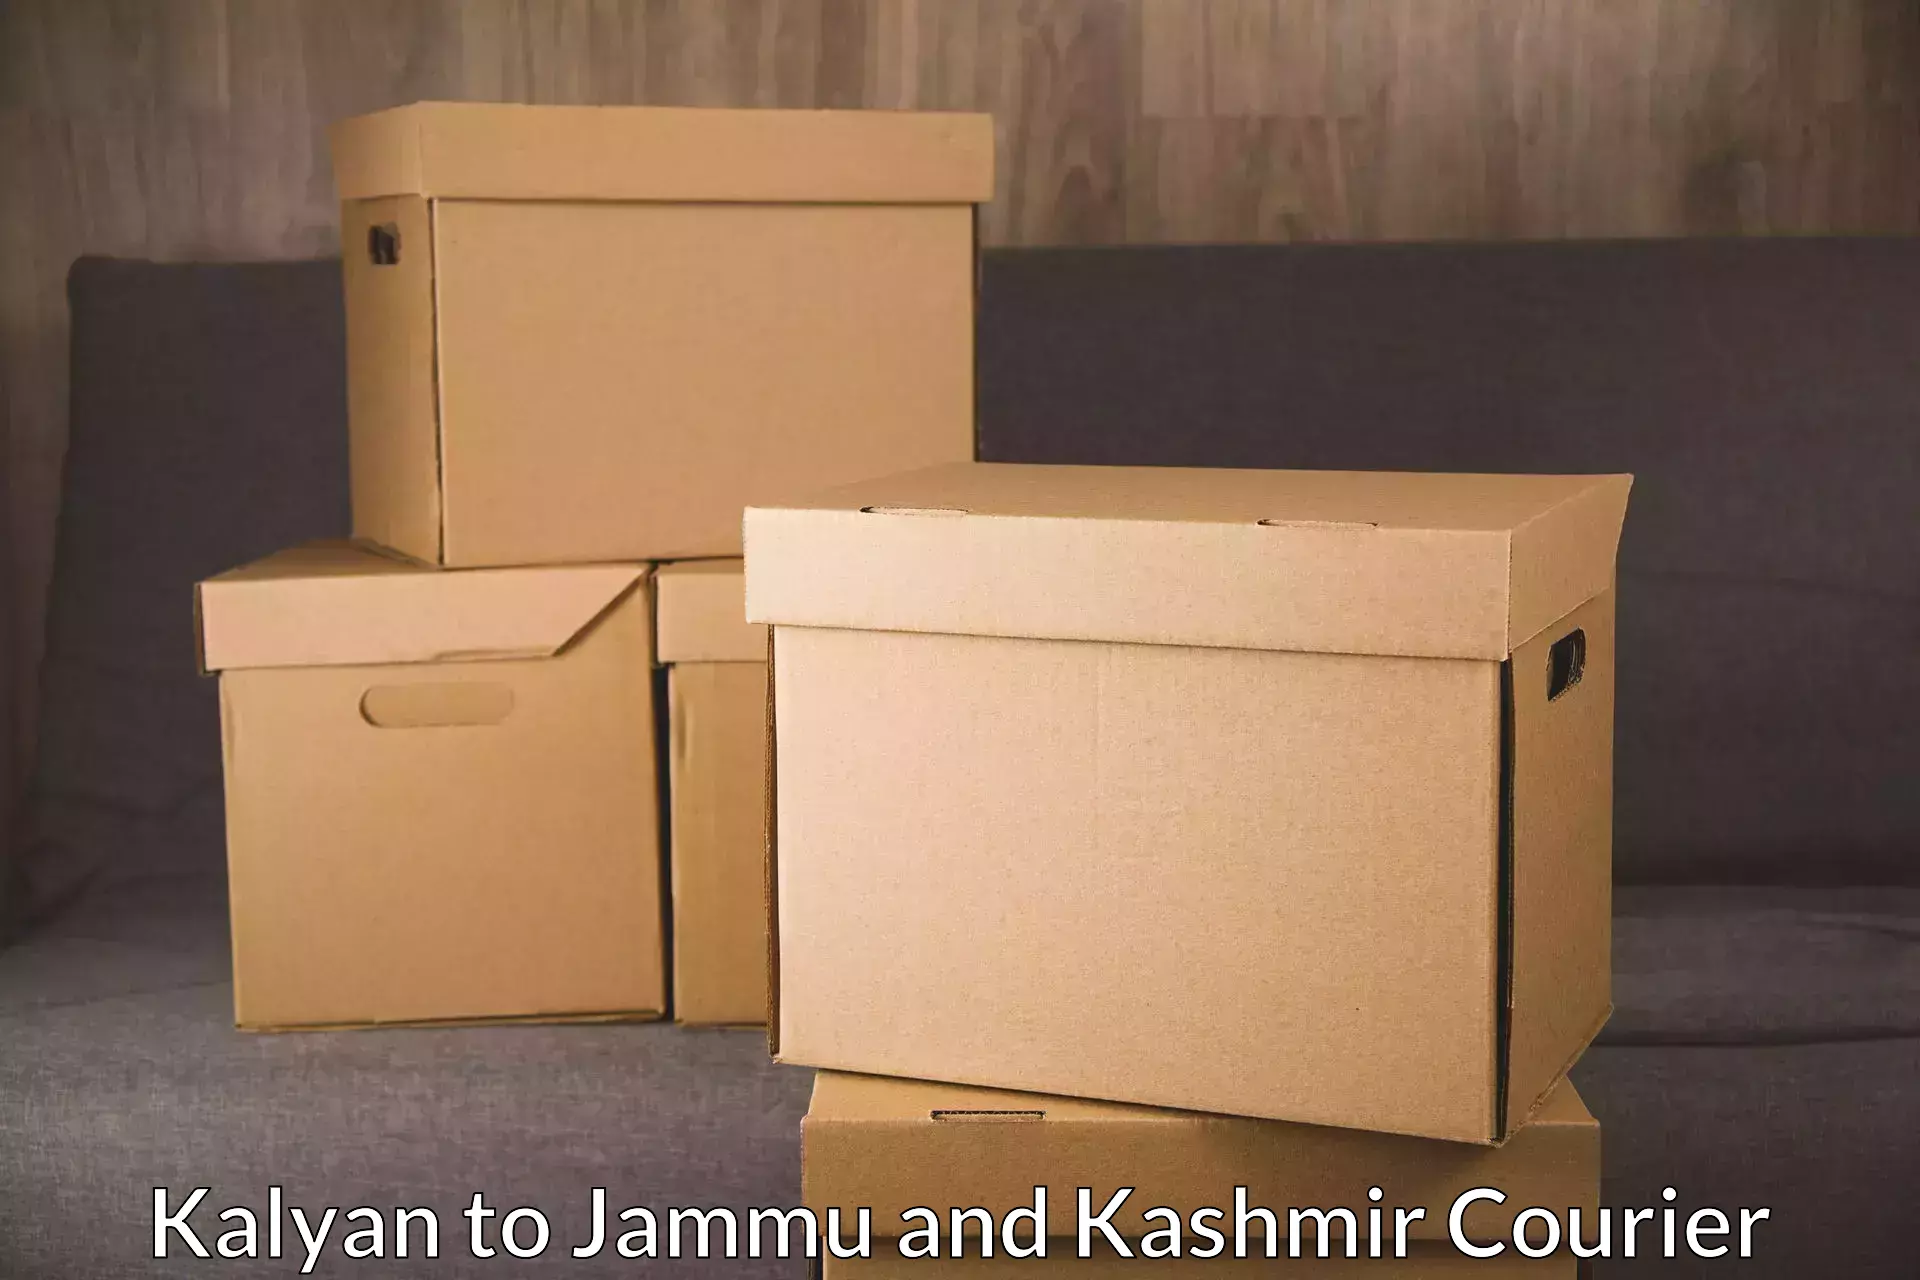 International courier rates Kalyan to Jammu and Kashmir